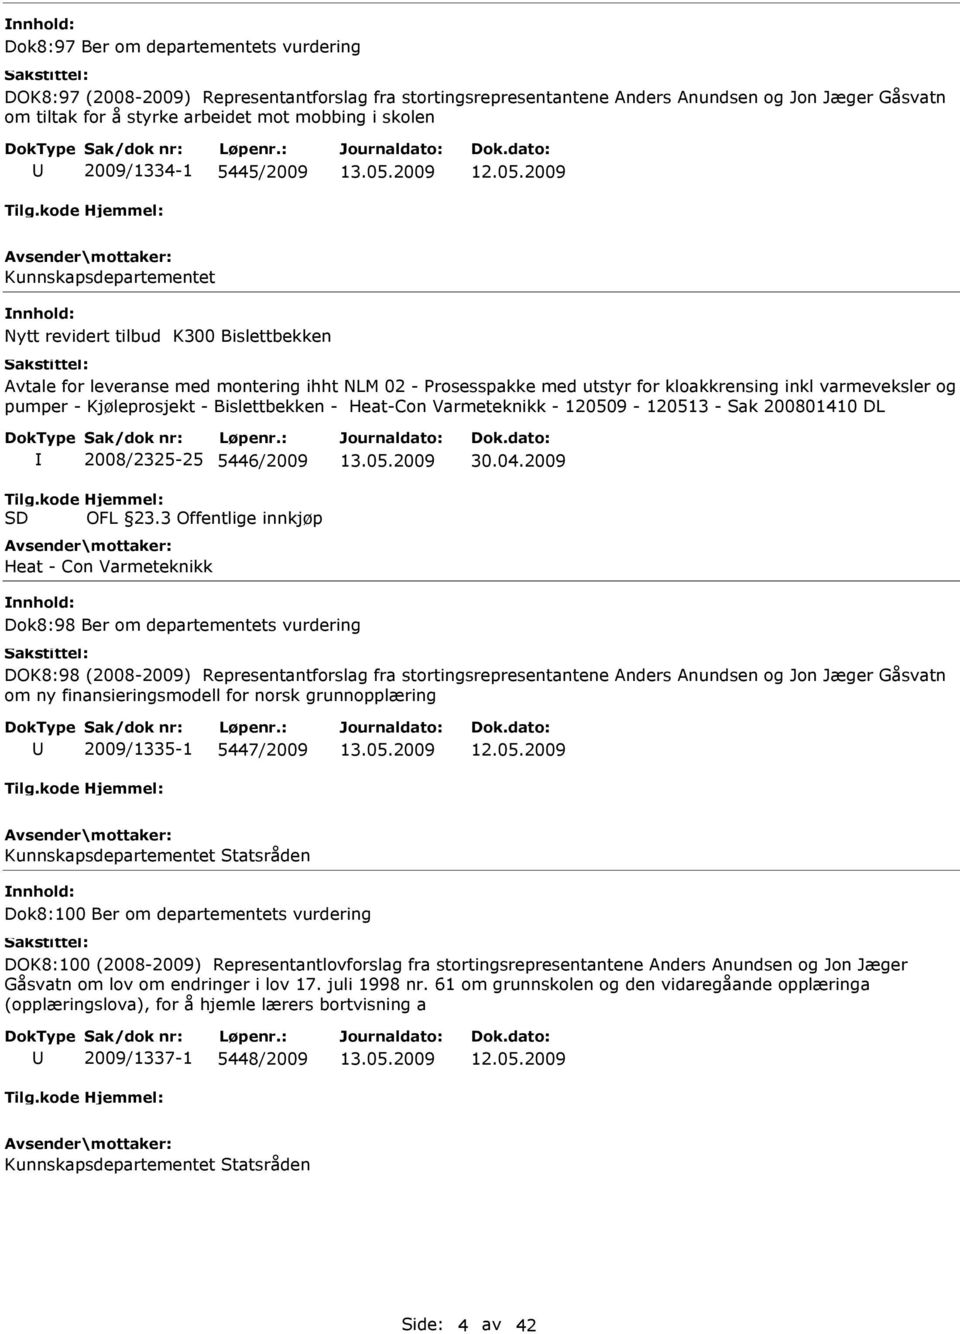 varmeveksler og pumper - Kjøleprosjekt - Bislettbekken - Heat-Con Varmeteknikk - 120509-120513 - Sak 200801410 DL Tilg.kode SD 2008/2325-25 5446/2009 Hjemmel: OFL 23.